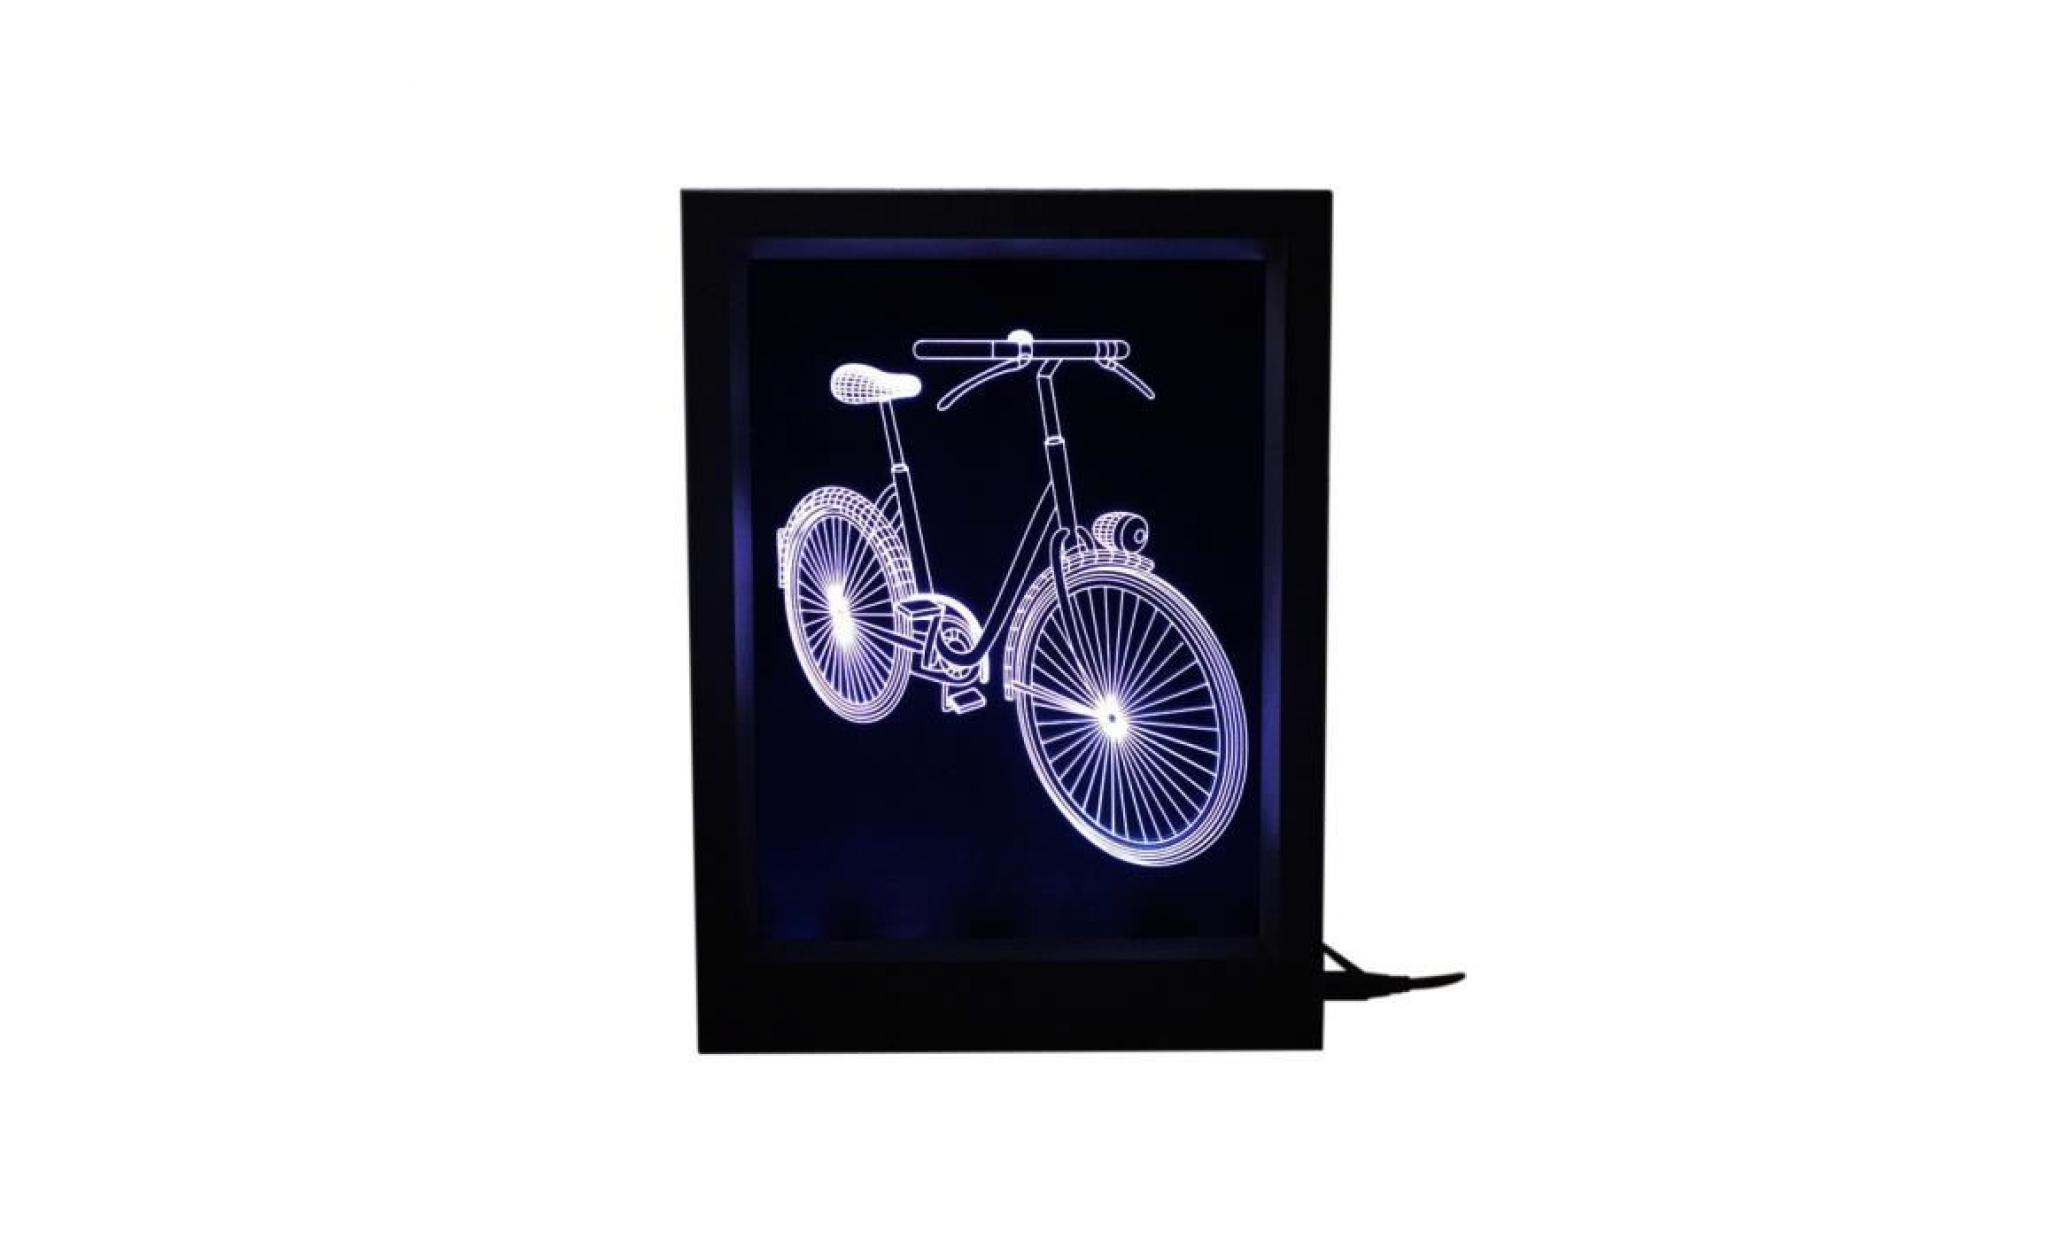 pilerty®3d illusion optique lampes led nuit lumière vélo cadre photo creative cadeau visual@zf559 pas cher